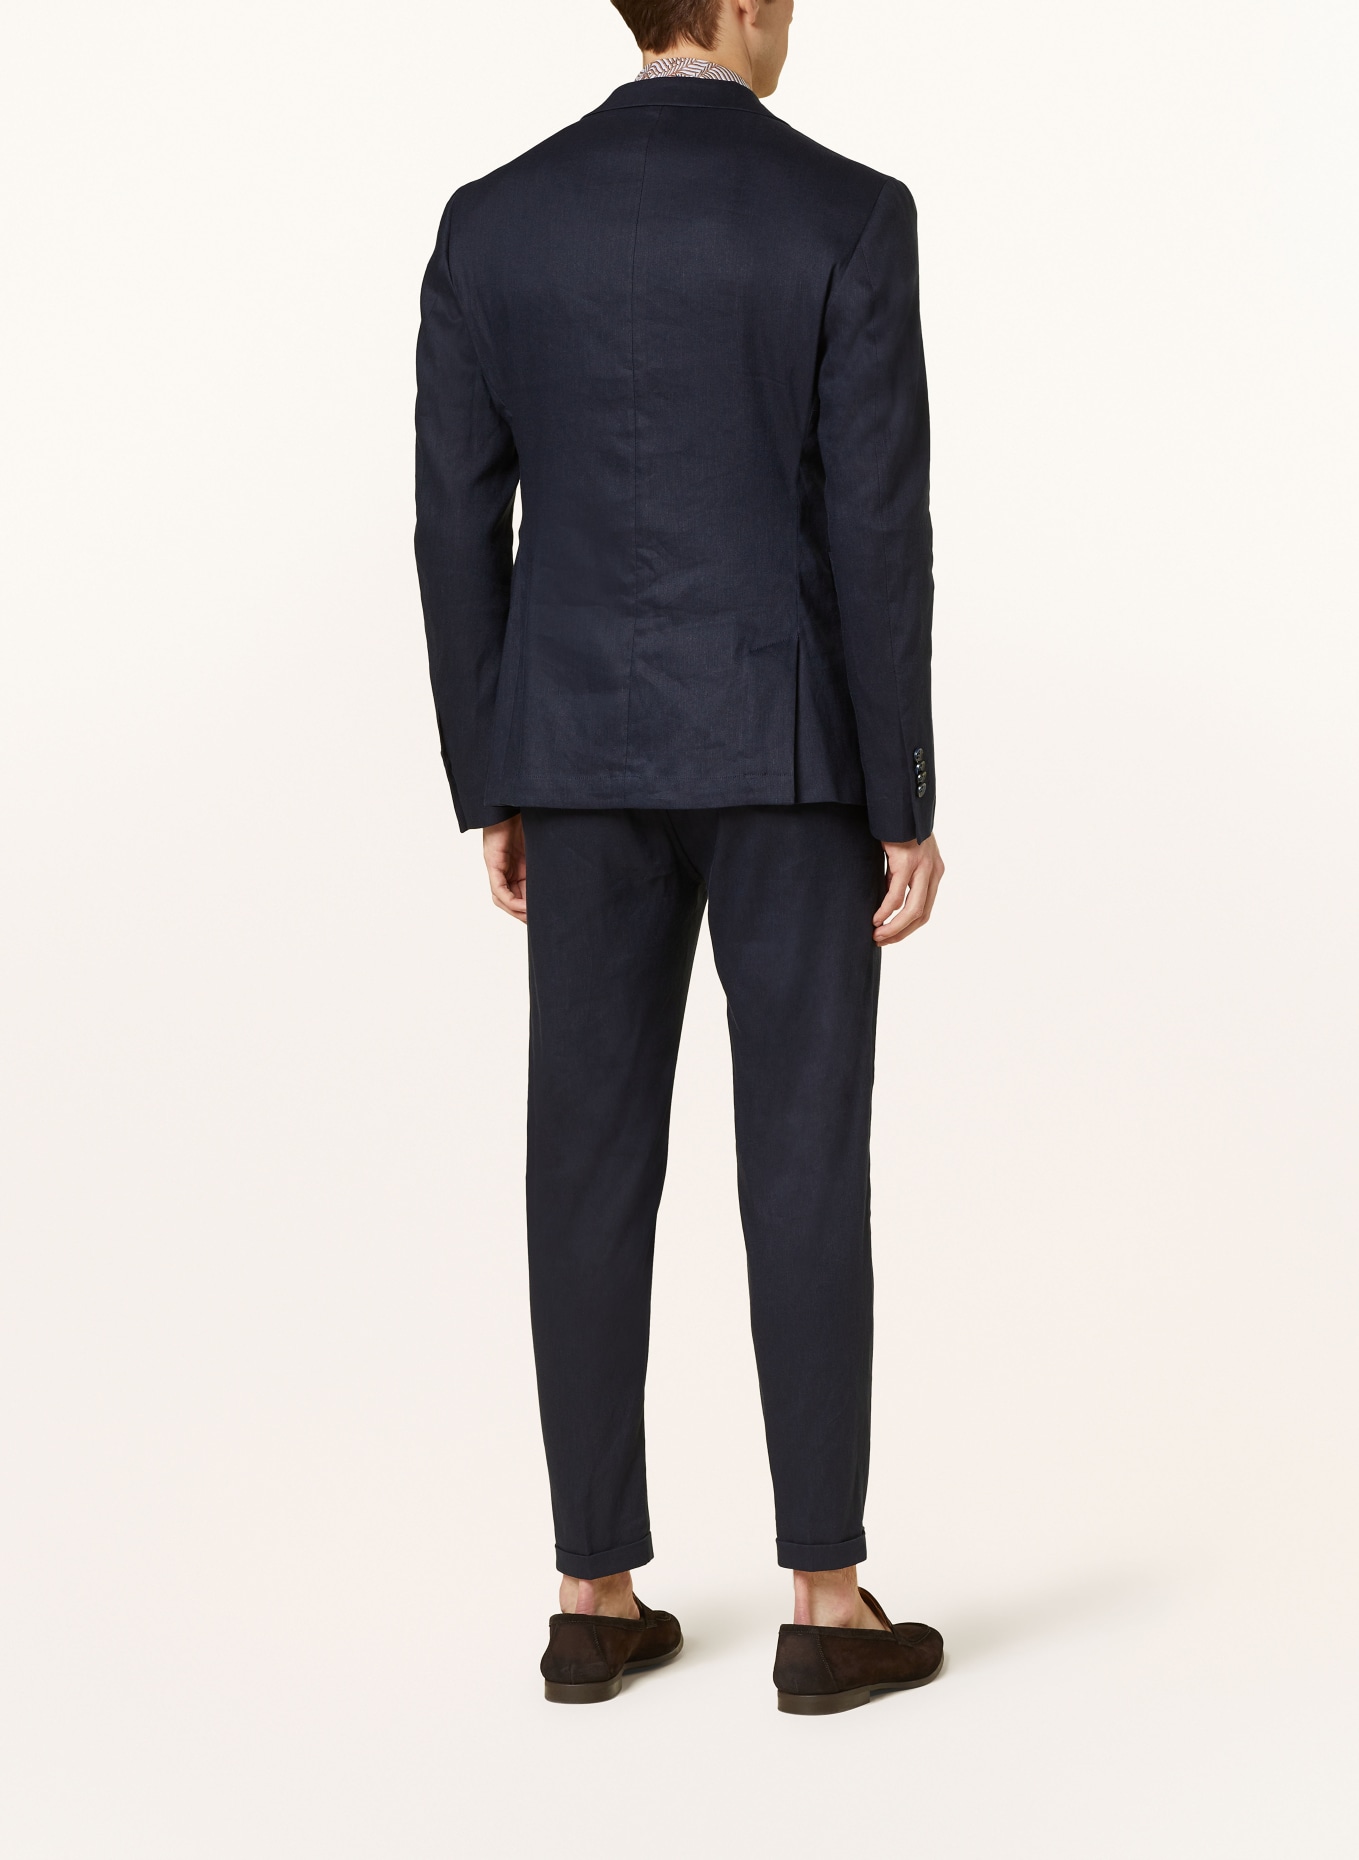 CINQUE Suit jacket CICAVA extra slim fit with linen, Color: 69 DUNKELBLAU (Image 3)